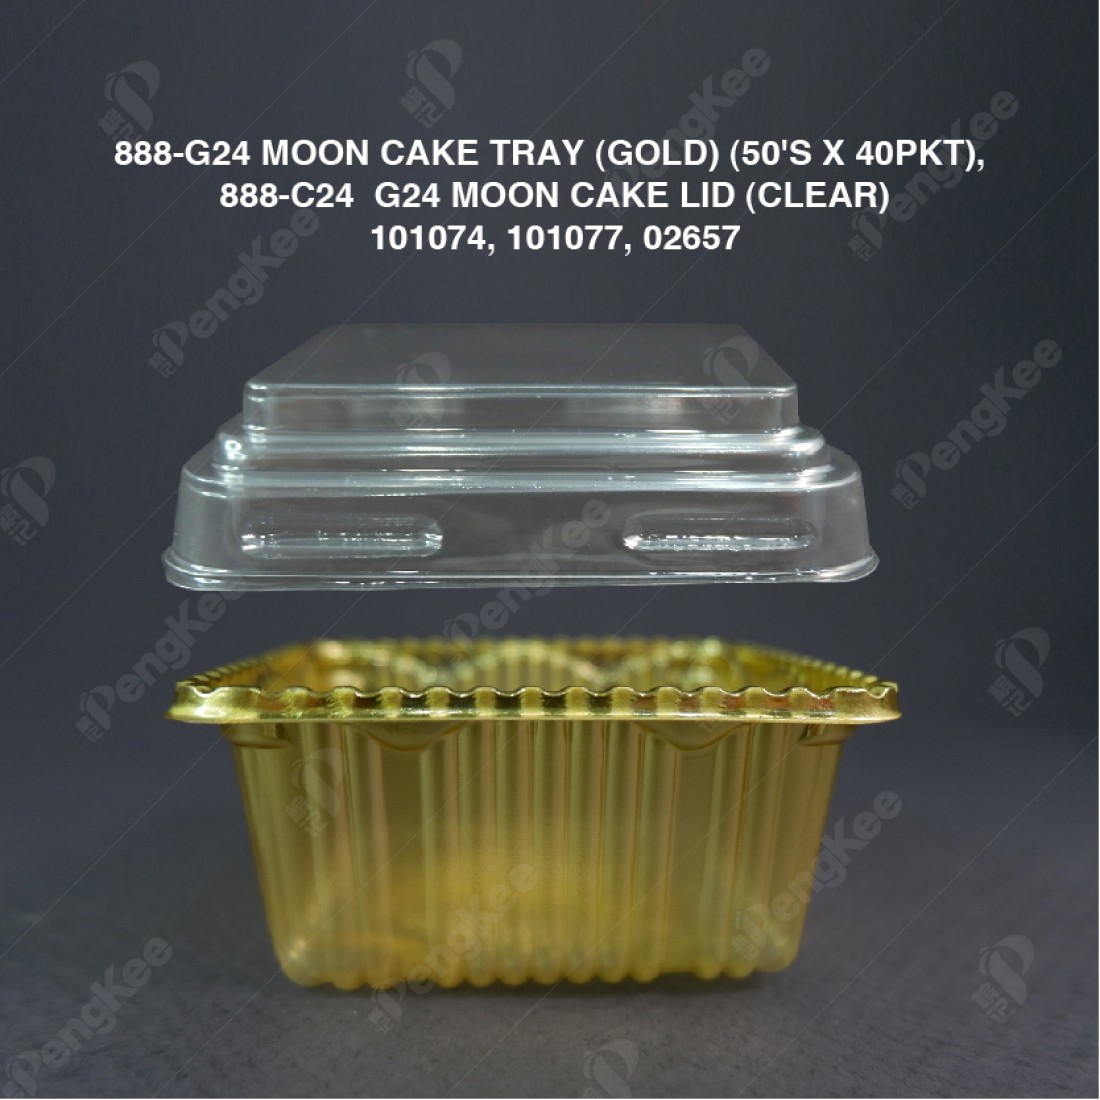 888-C24  G24 MOON CAKE LID (CLEAR) (50PCS) (40PKTCTN) LCK-1H LID  